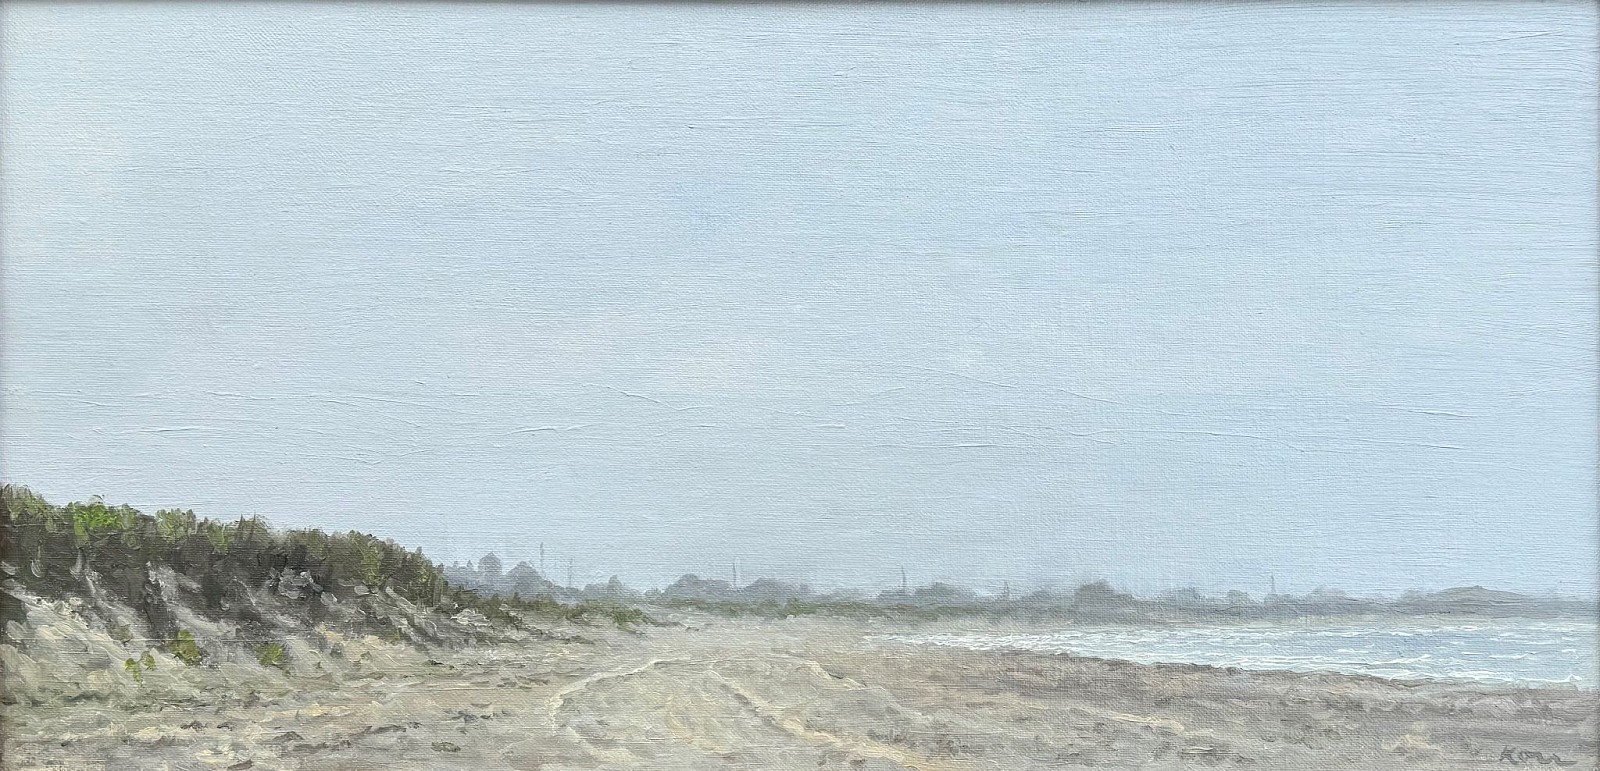 Marla Korr, On Jetties Beach
oil on linen, 12 x 24 in. (30.5 x 61 cm)
MK240409